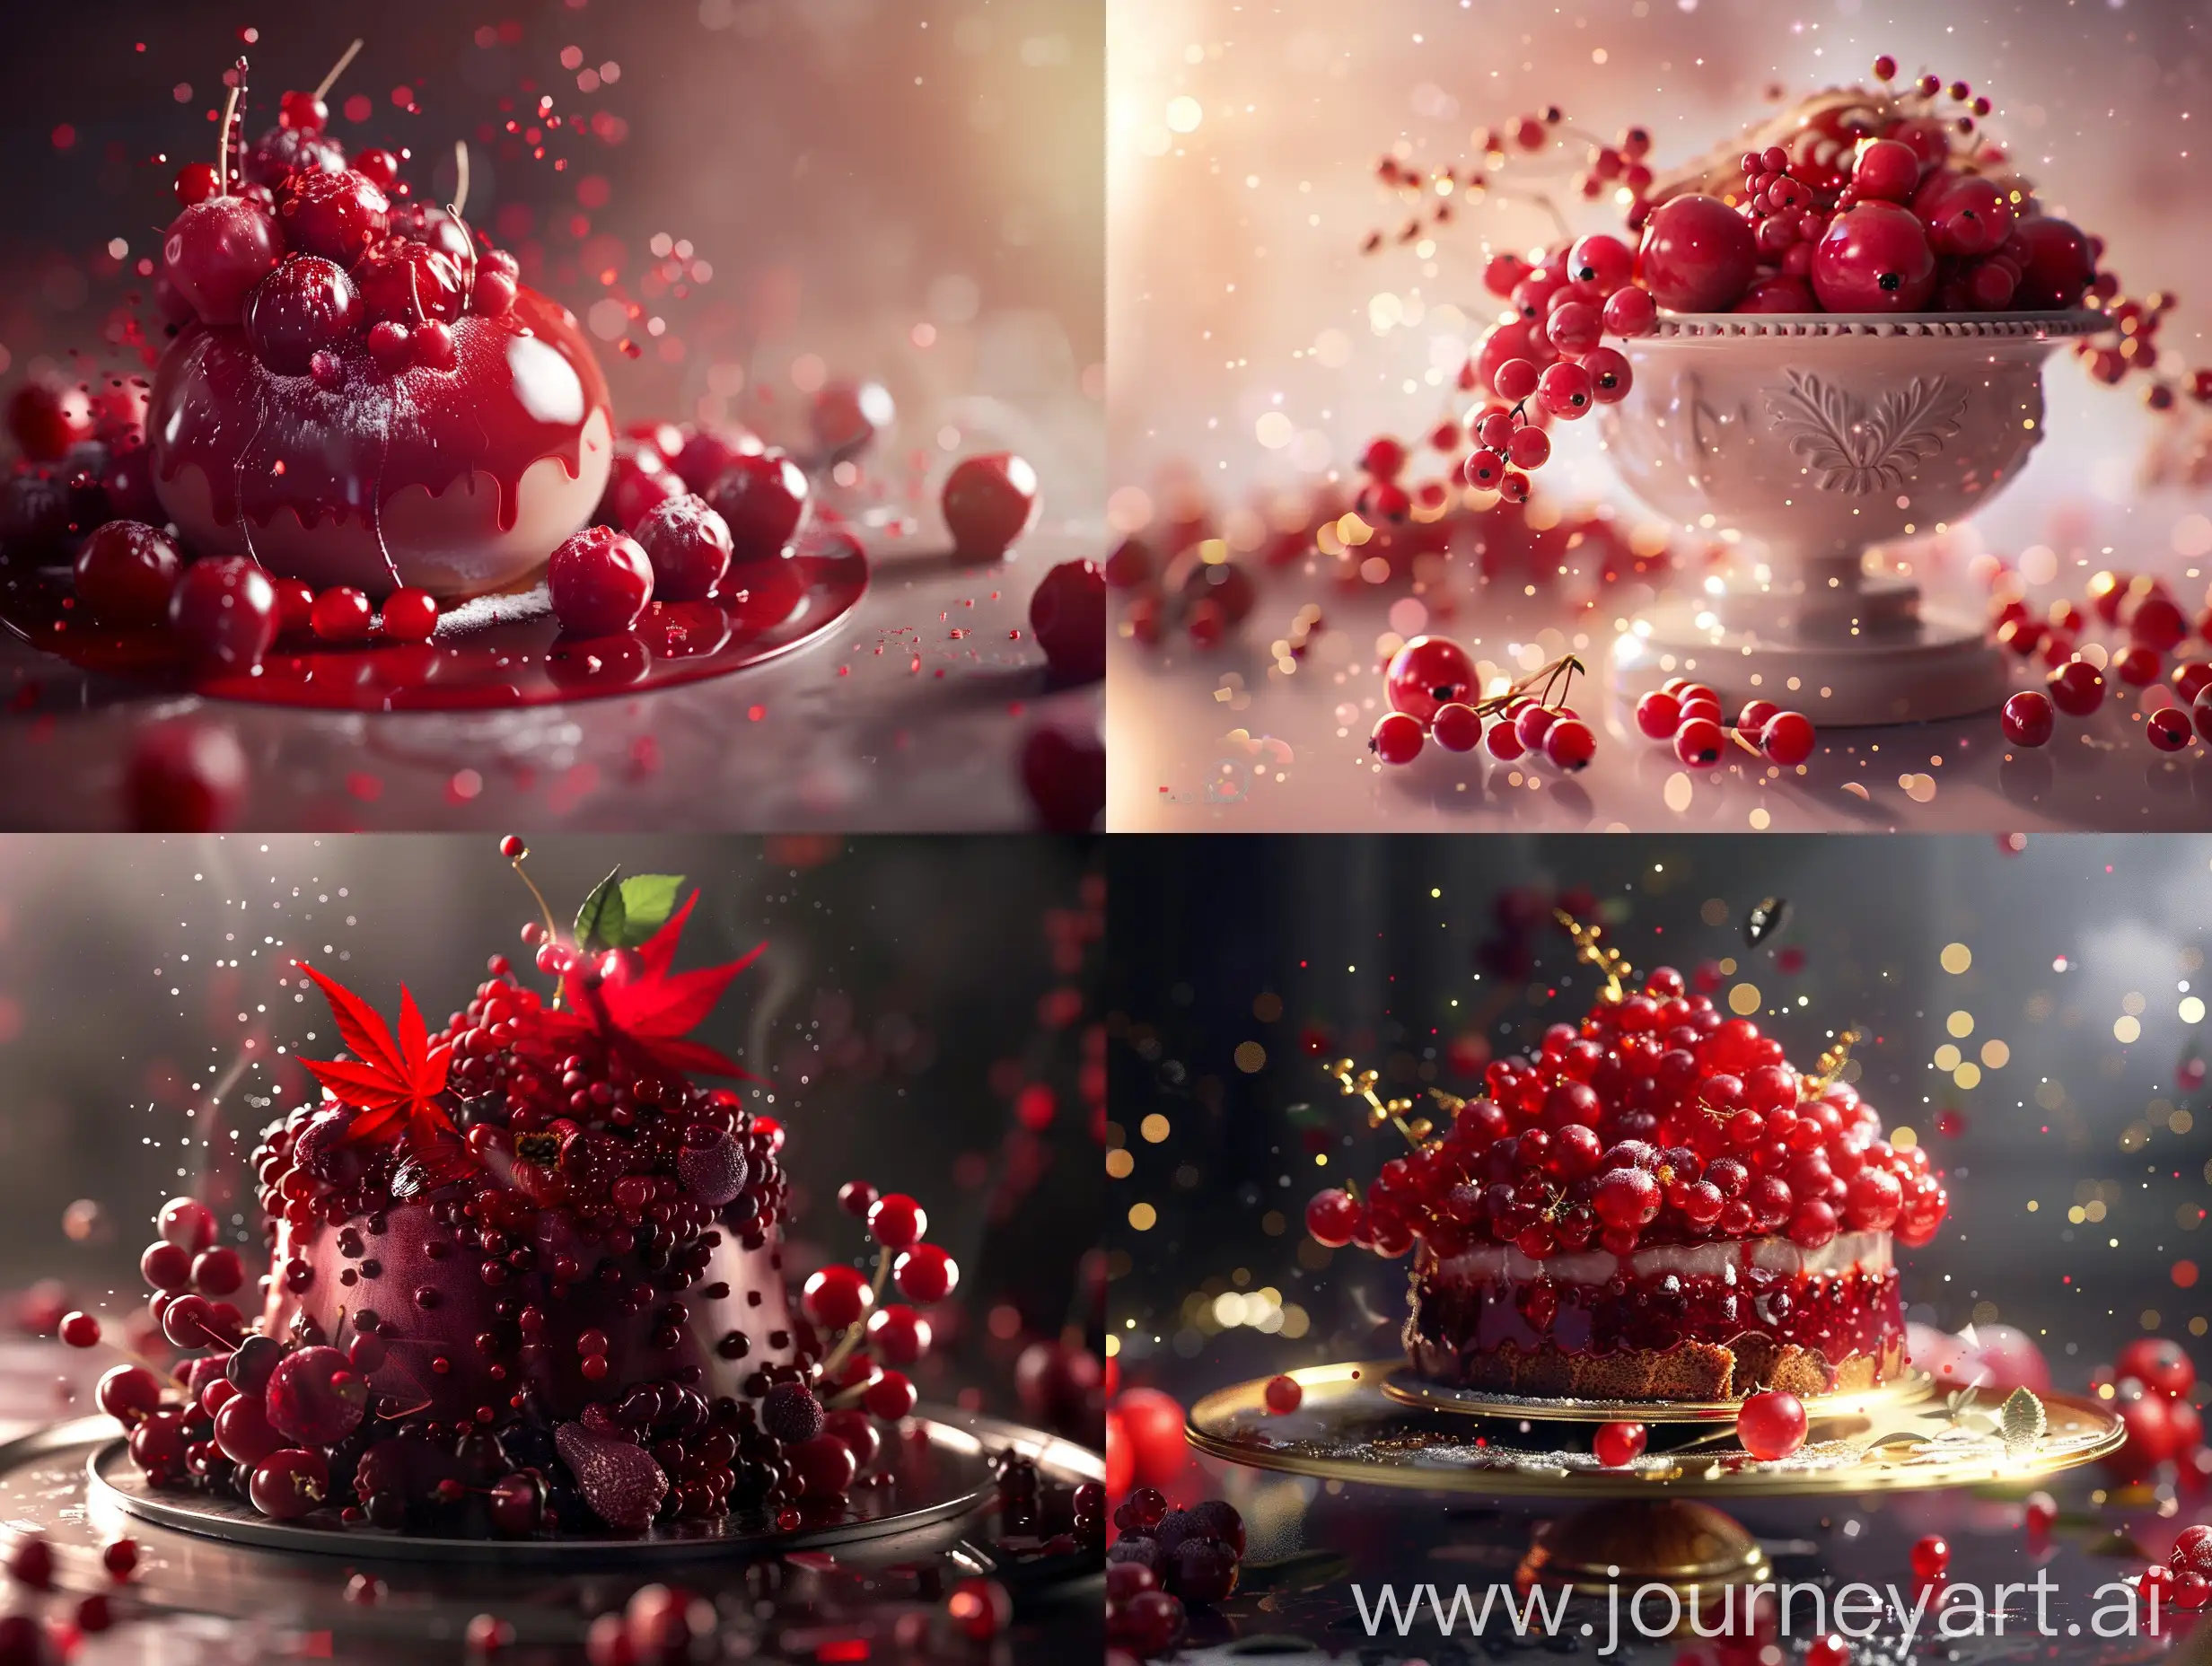 Elegant-Cinematic-FruitDecorated-Cake-with-Dramatic-Lighting